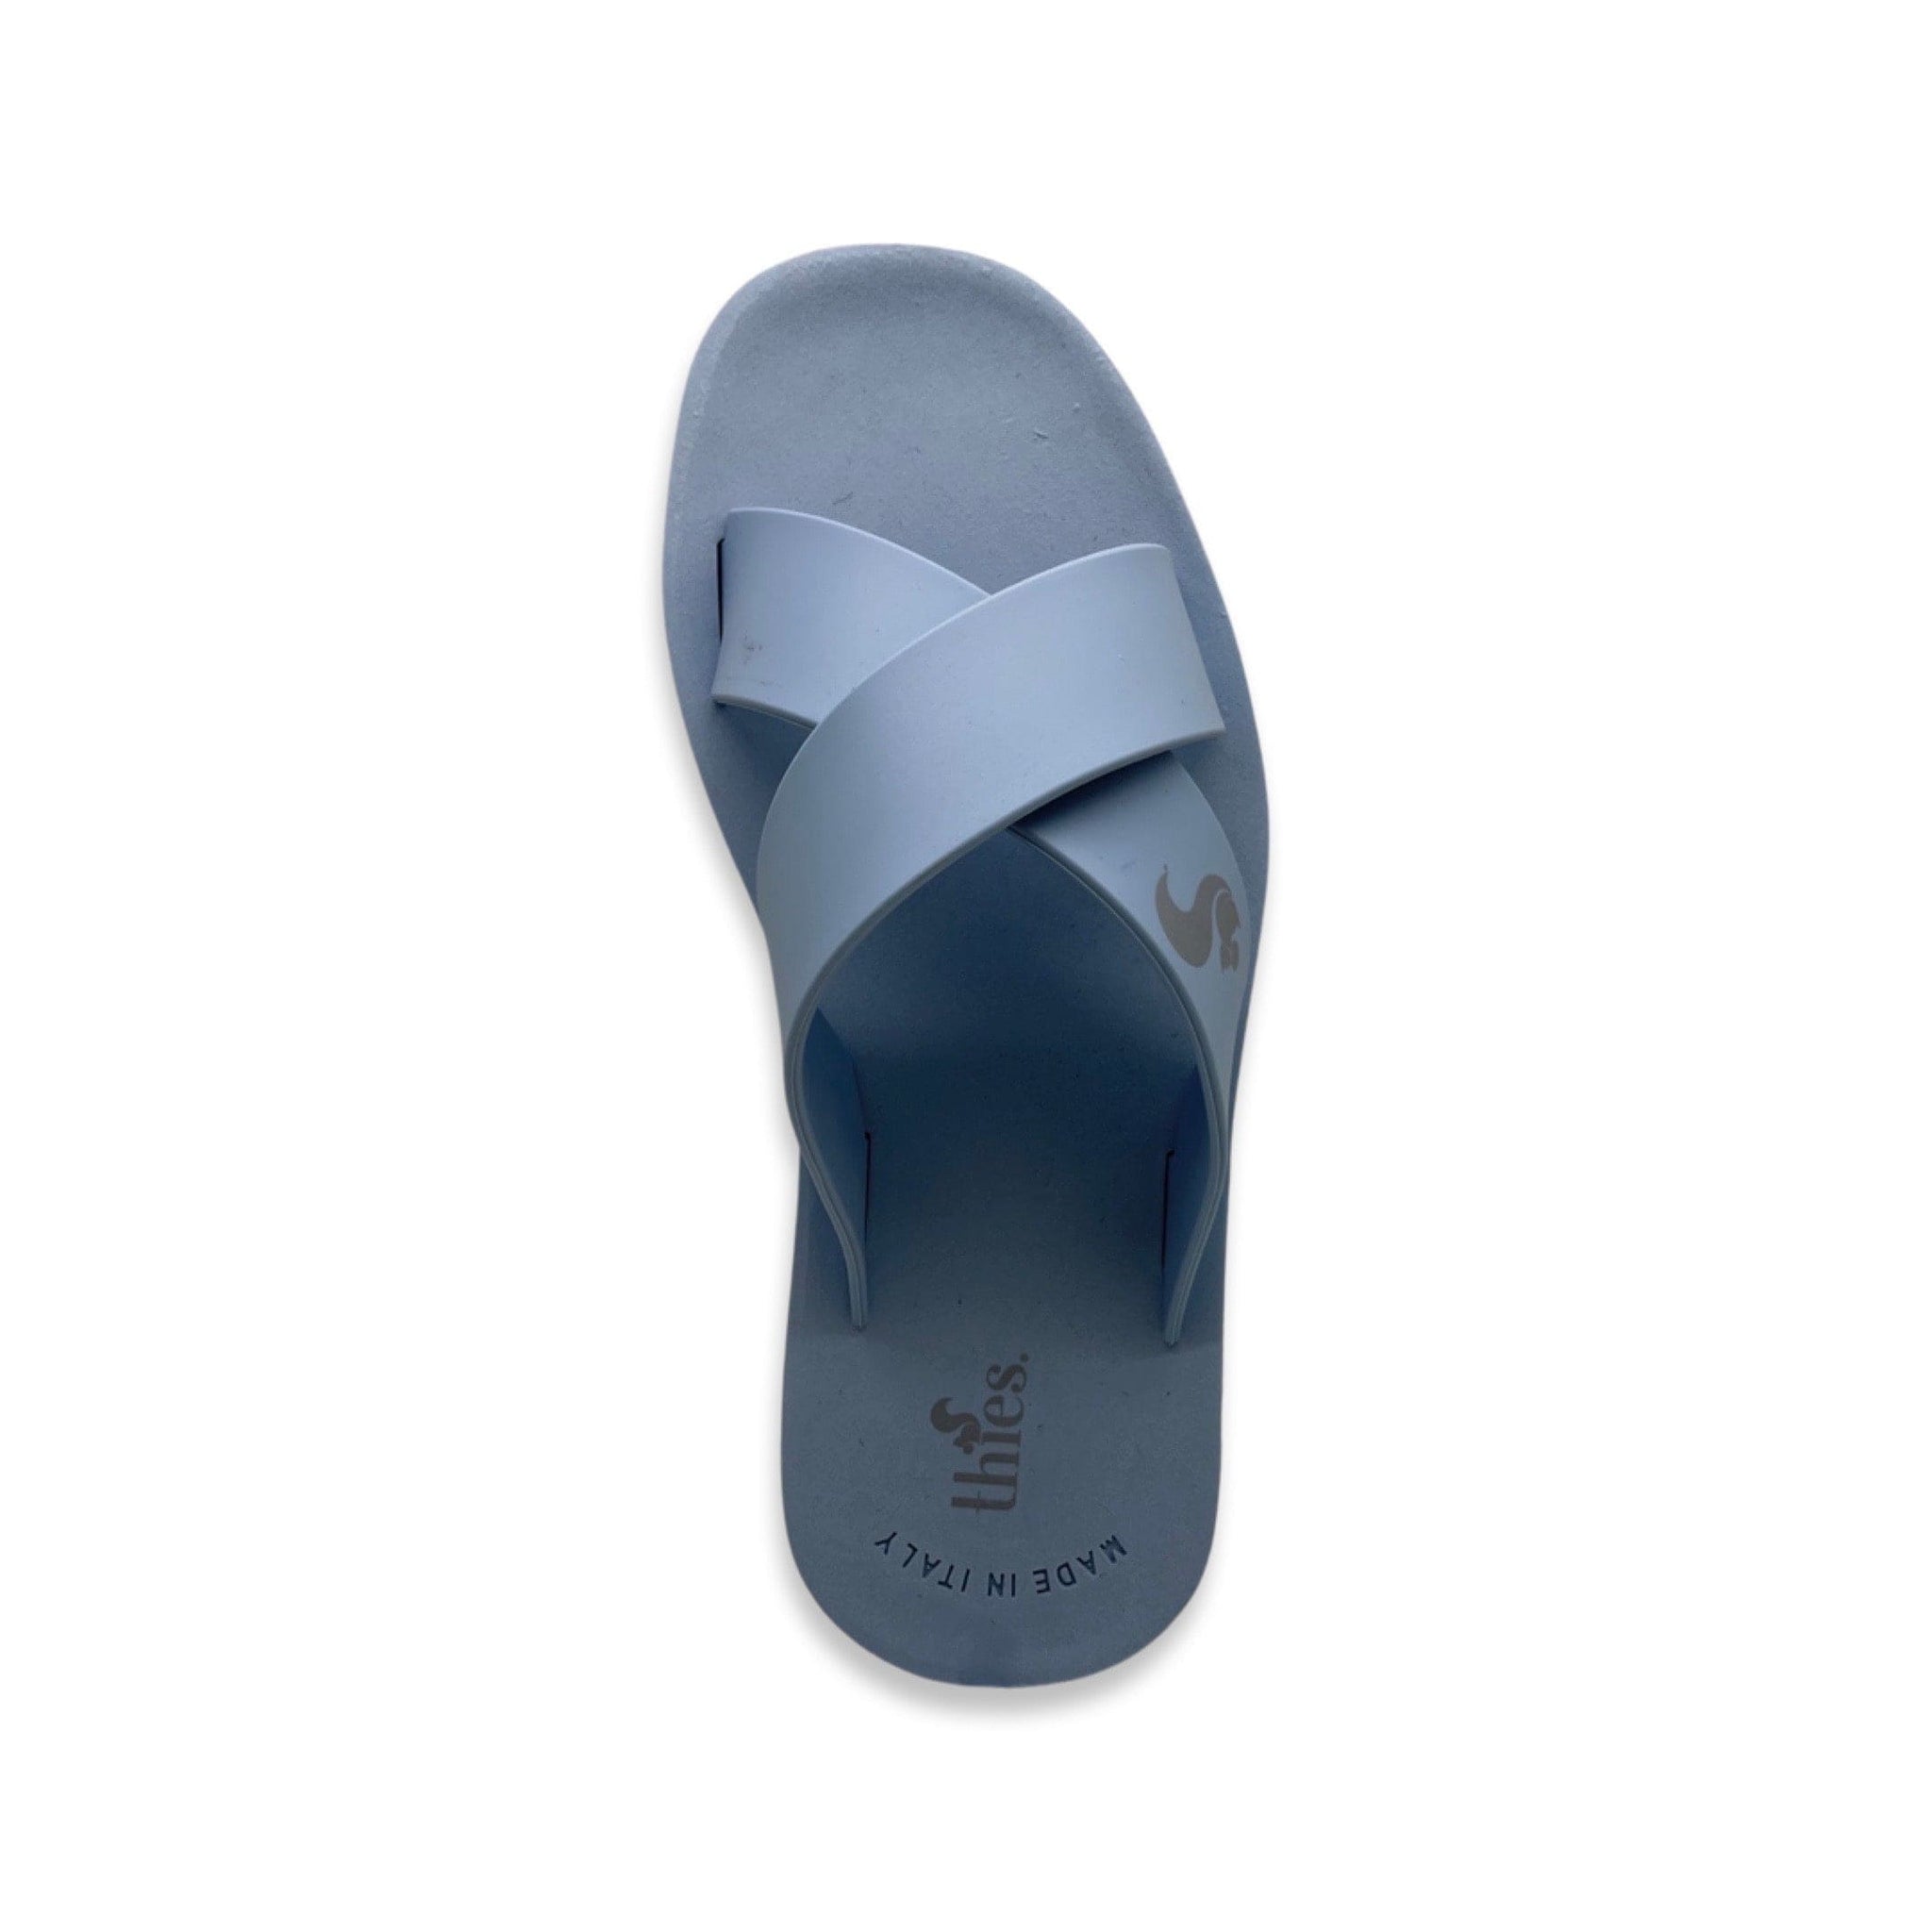 Calçat NAT 2 thies 1856 ® Eco Malibu vegà blau clar (W/X) moda sostenible moda ètica